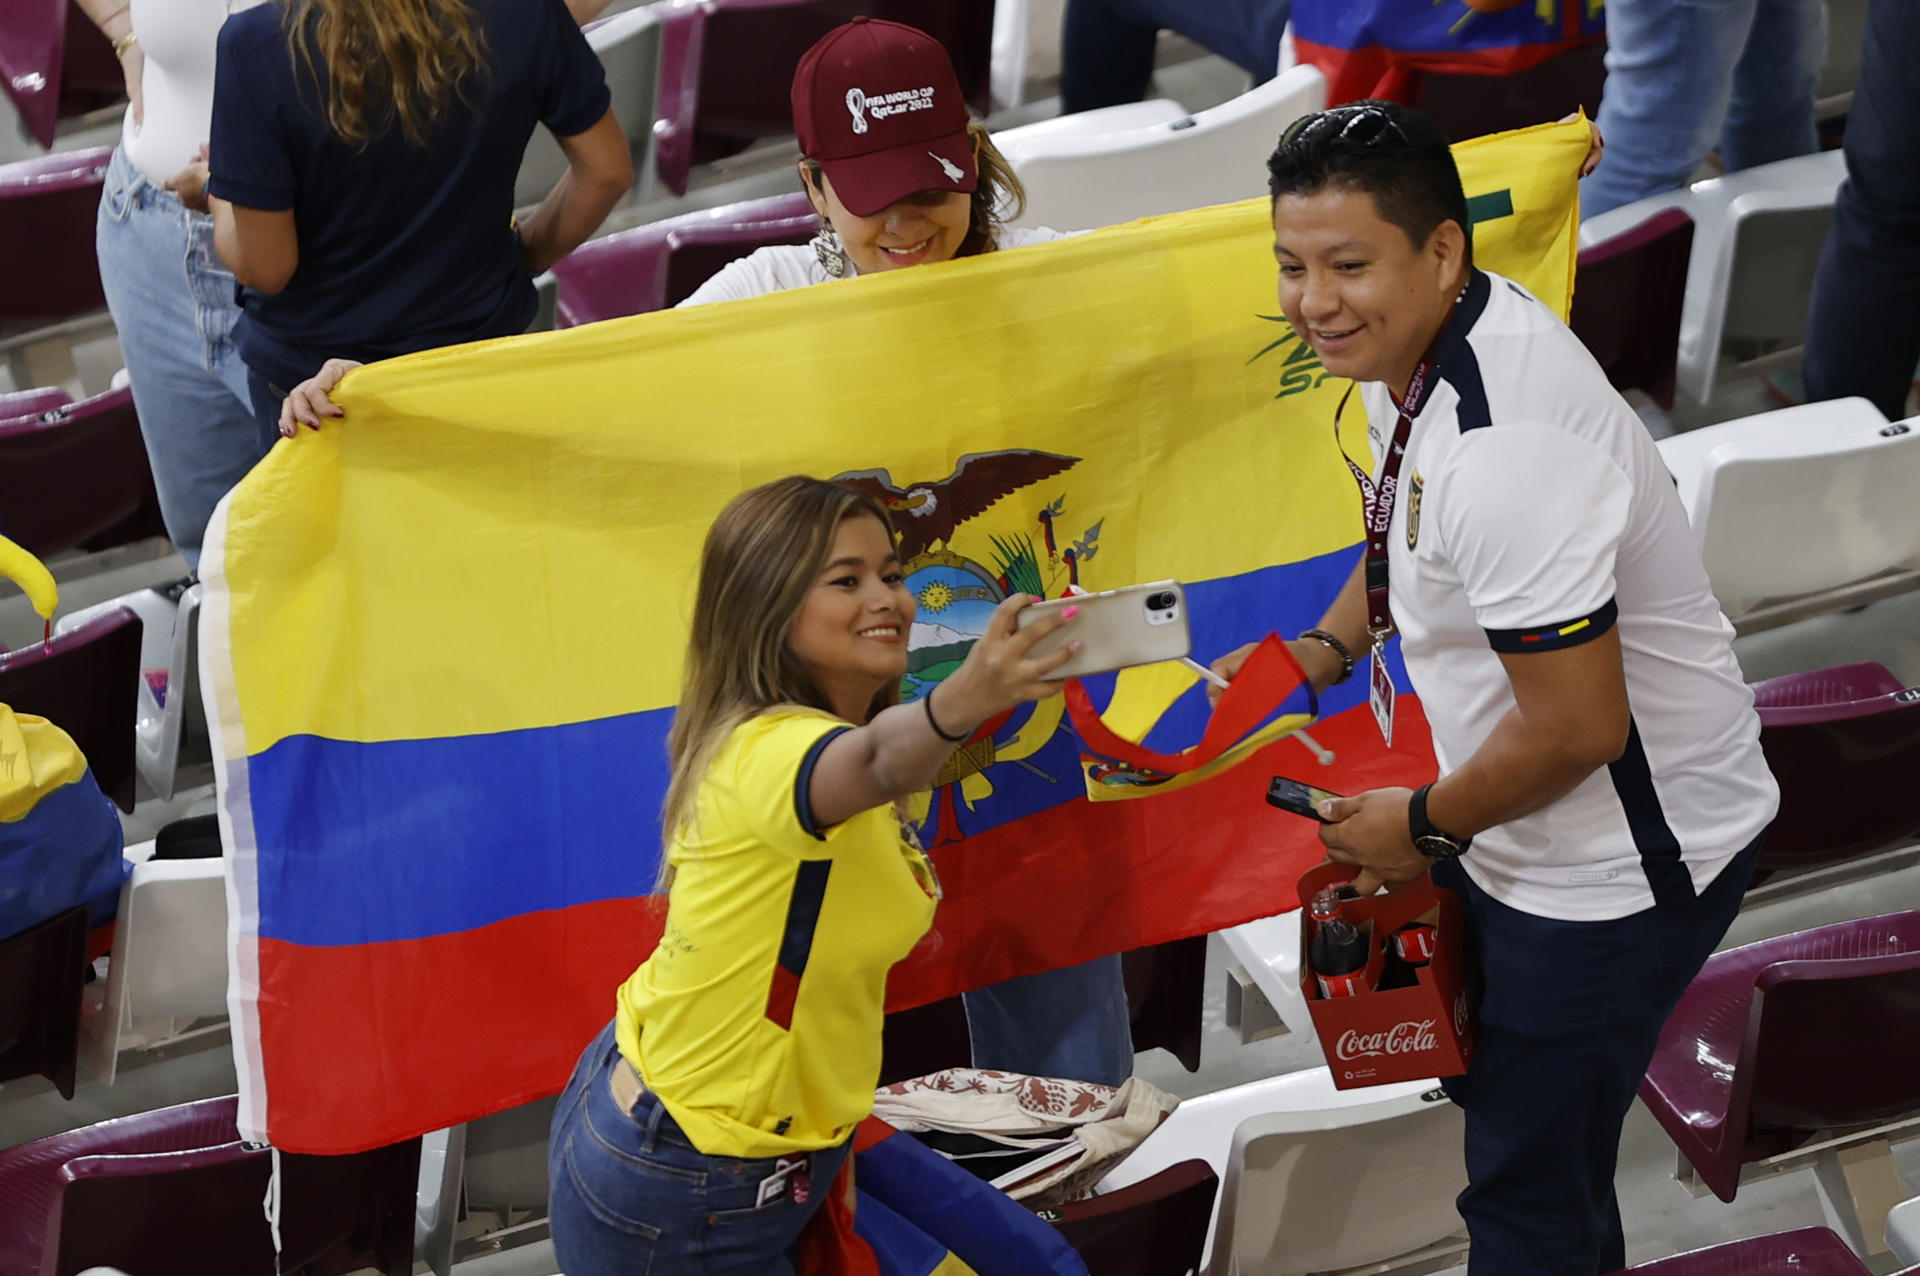 La selección de Ecuador empató con gol de Enner Valencia